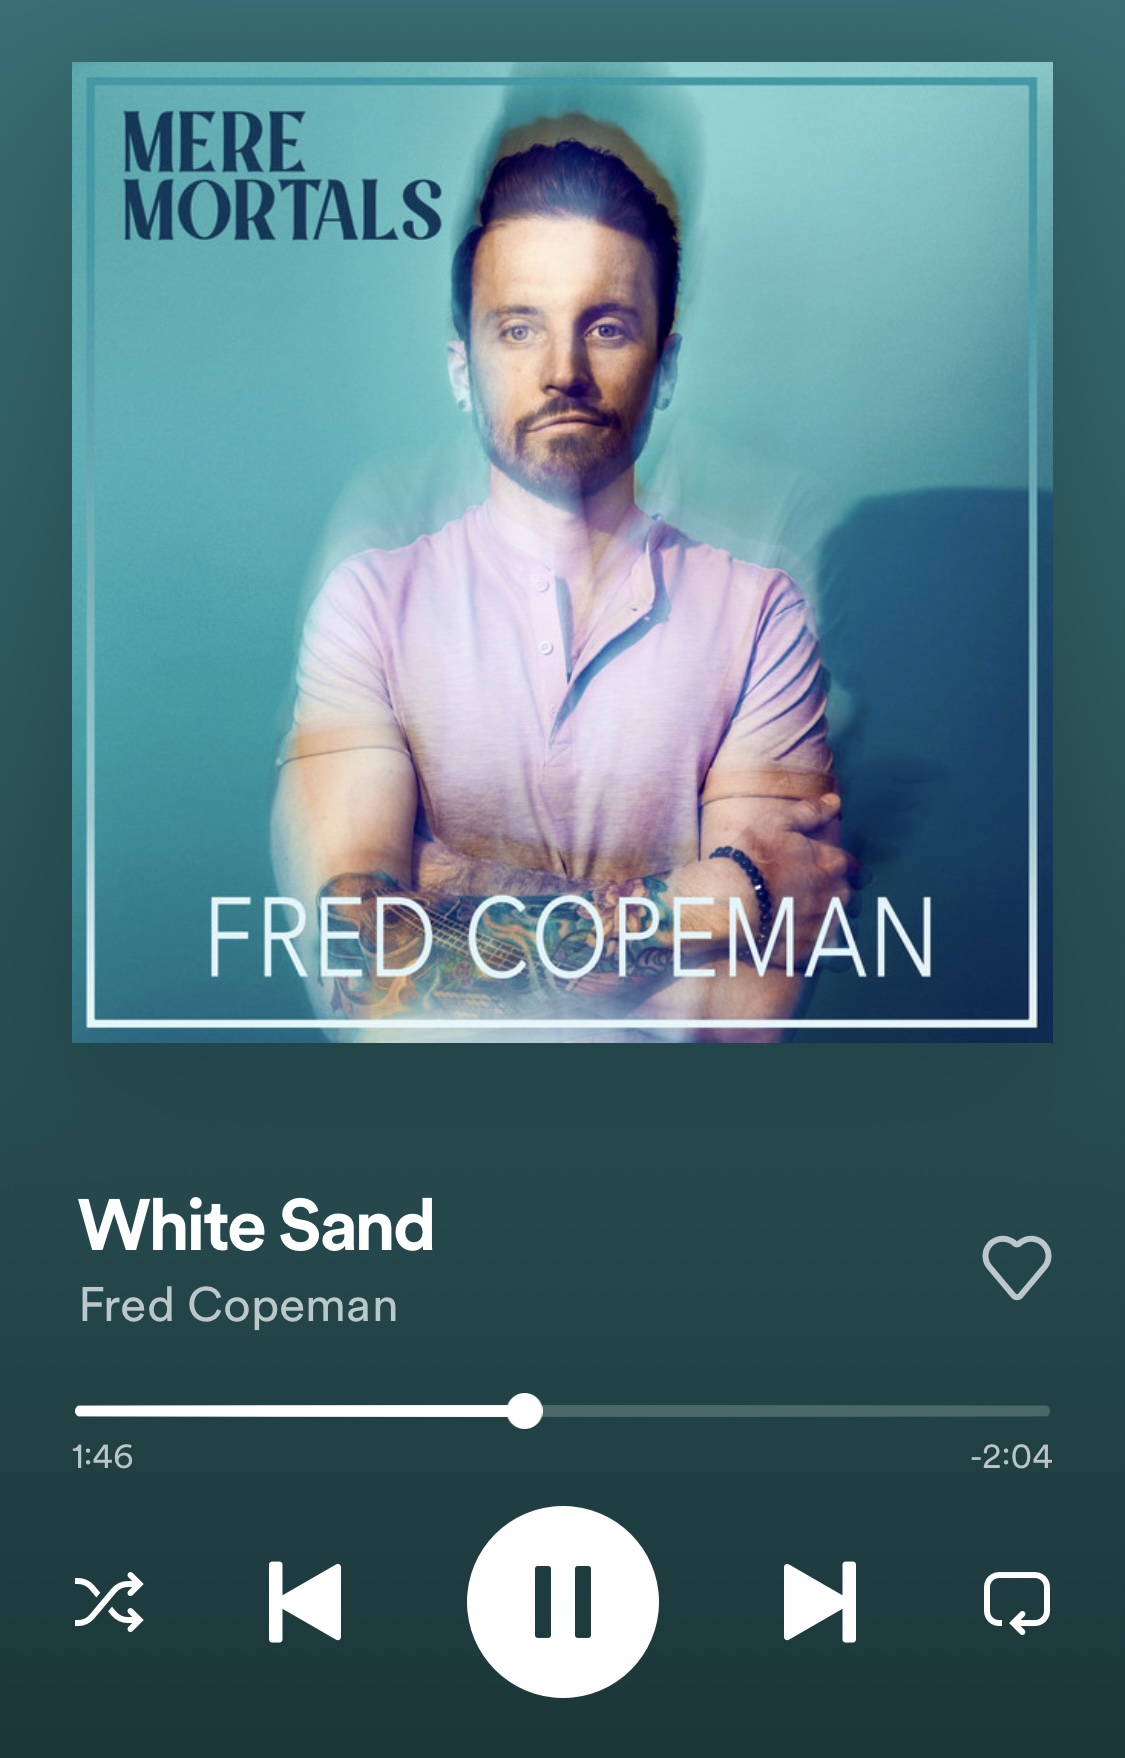 FredCopeman